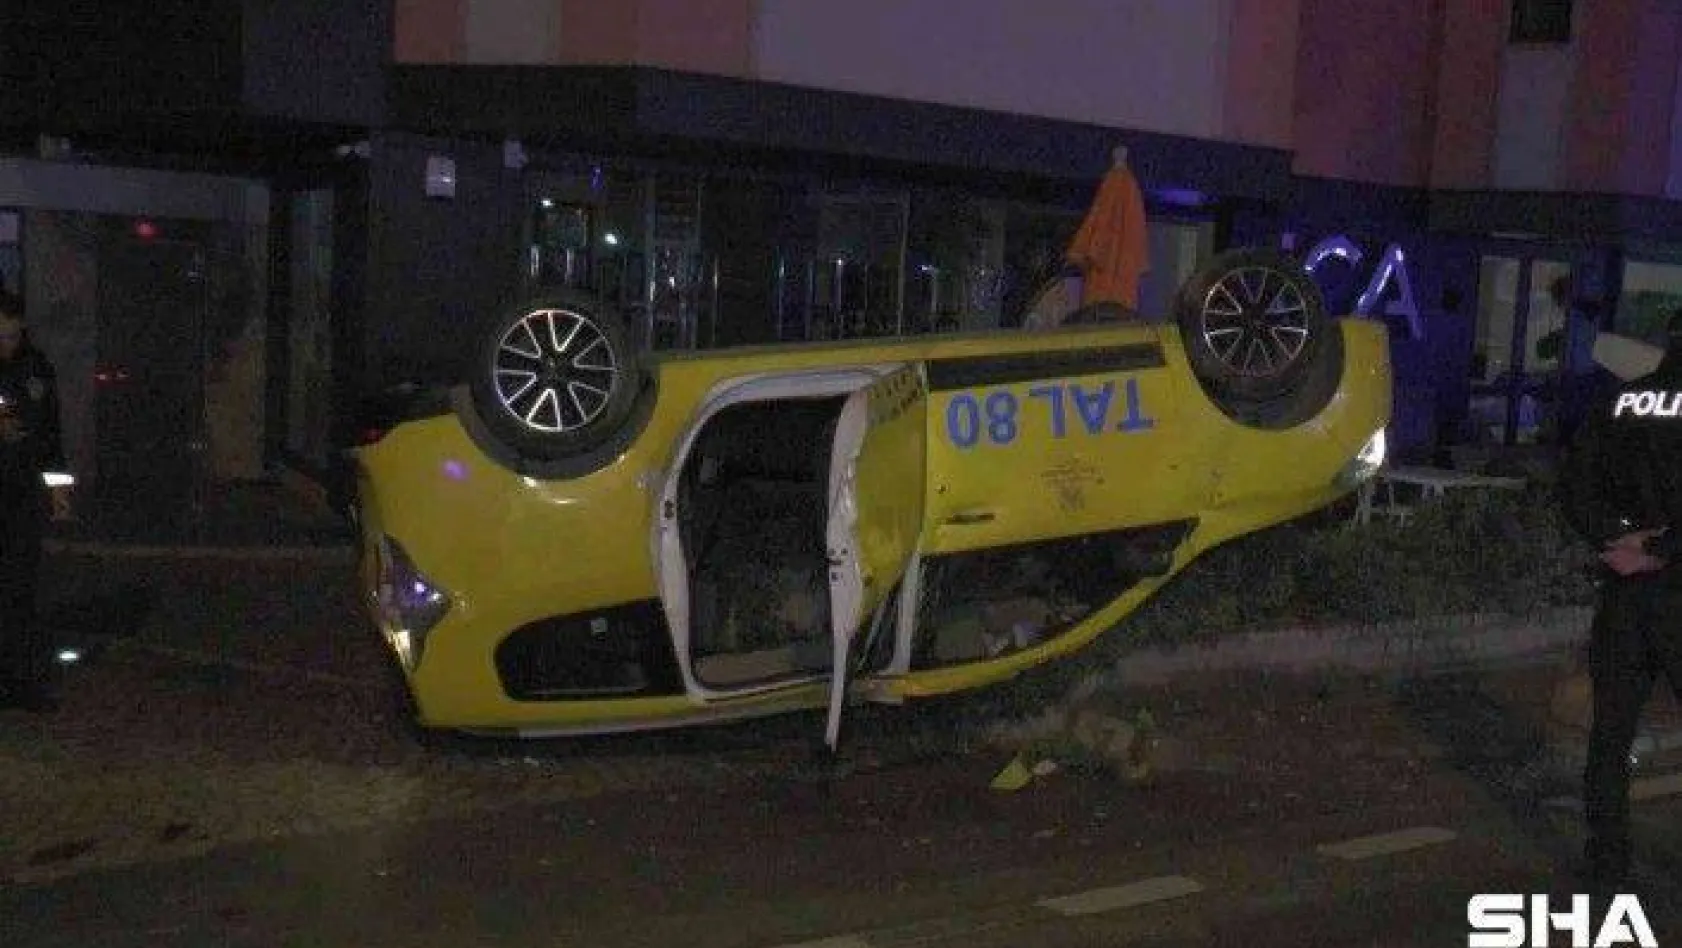 Kadıköy'de ticari taksi takla attı: 1 yaralı